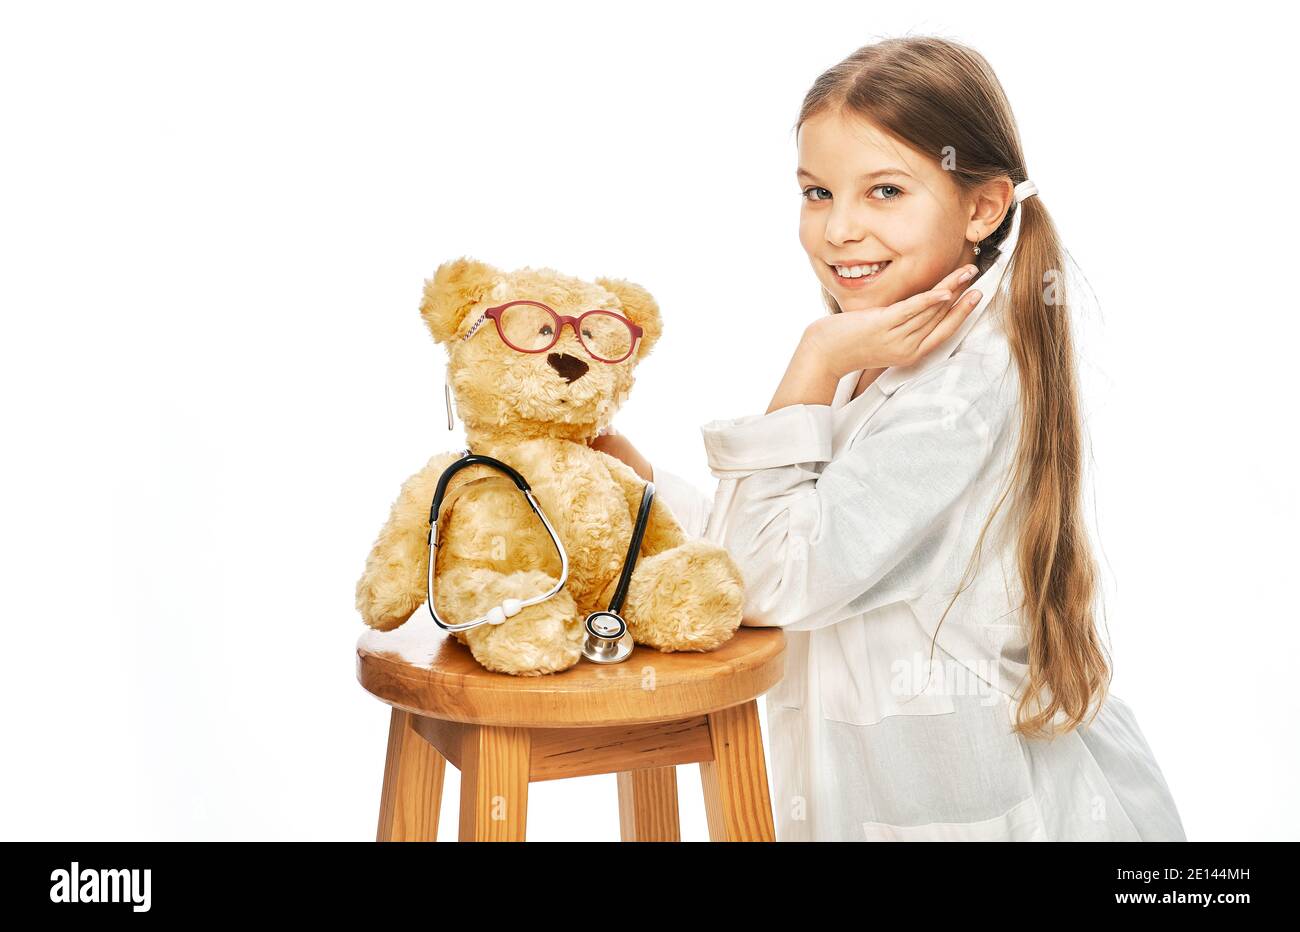 Nettes Mädchen spielen in Arzt Beruf mit einem Bär Spielzeug. Kinderhobby und zukünftige medizinische Beschäftigung Stockfoto